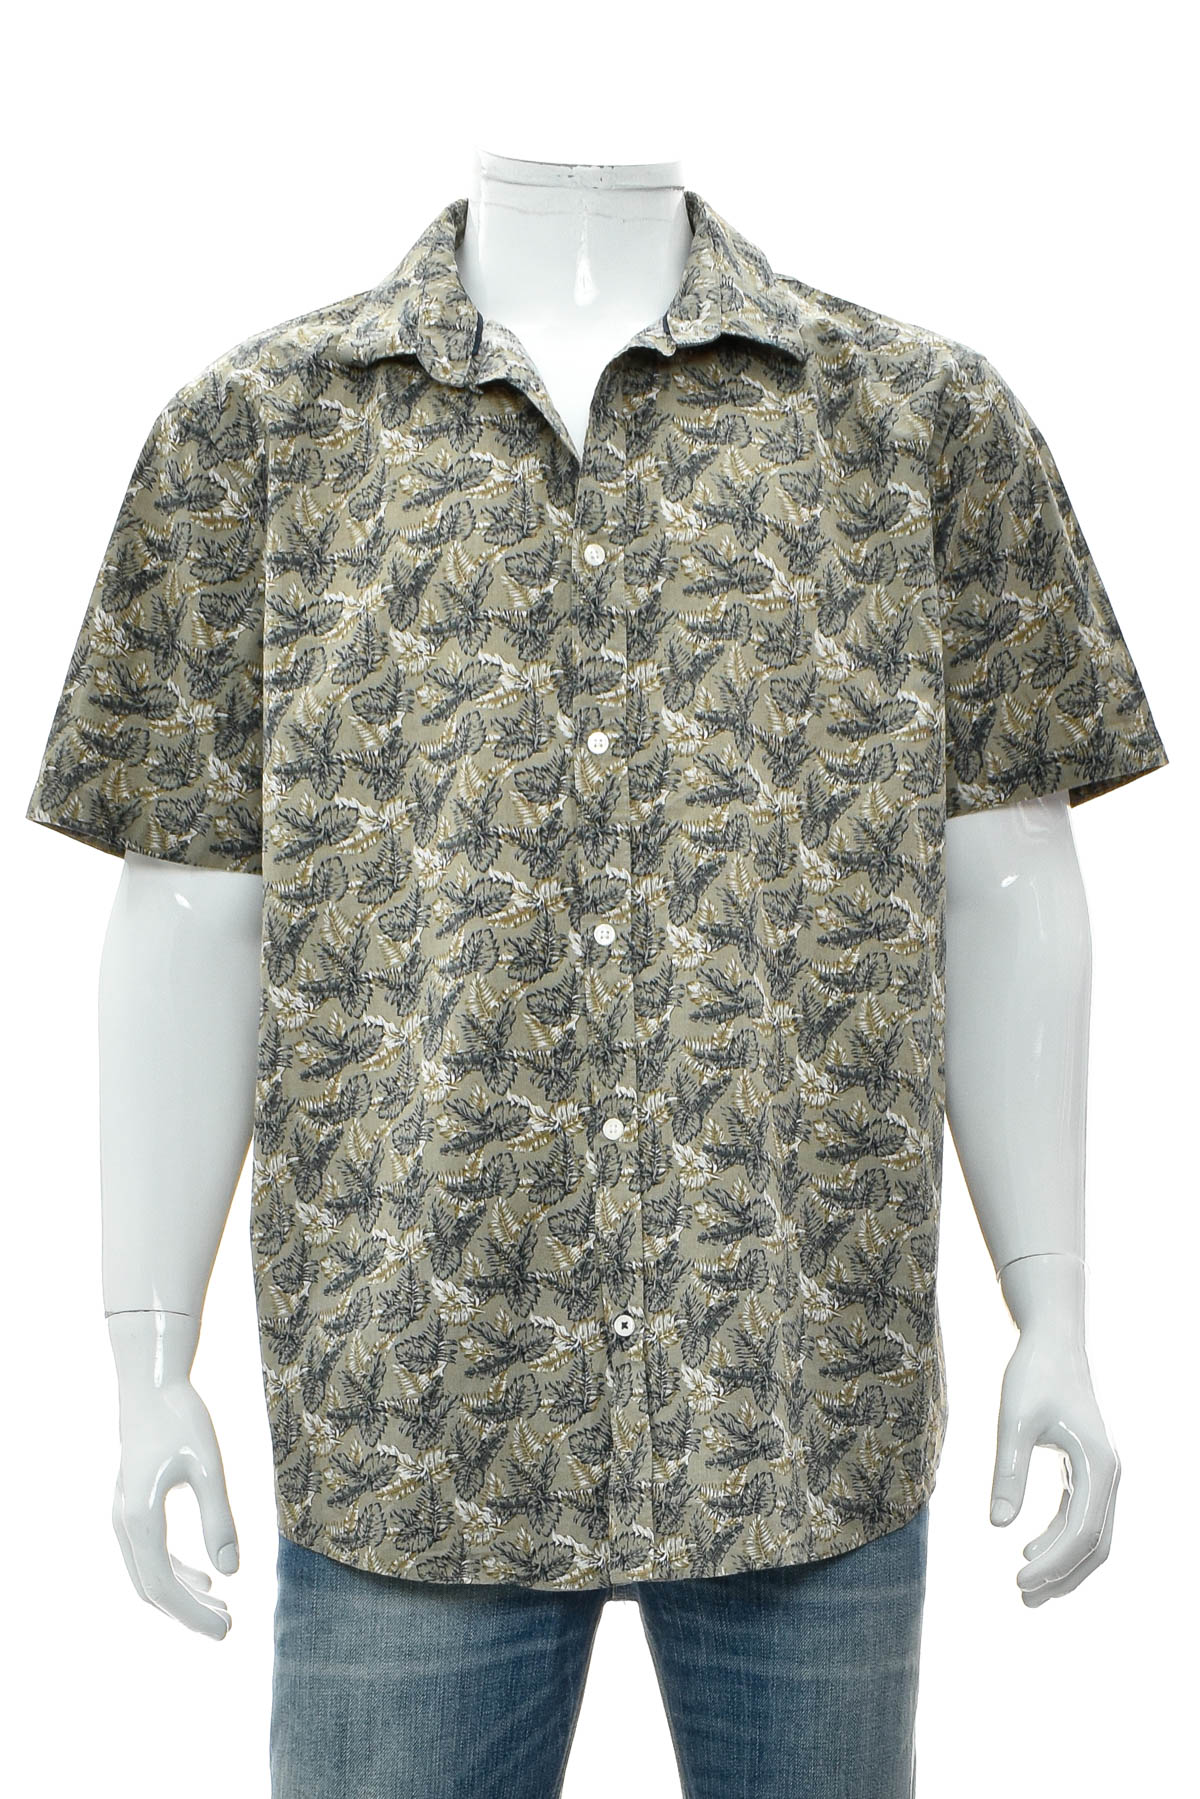 Men's shirt - IVEO by jbc - 0